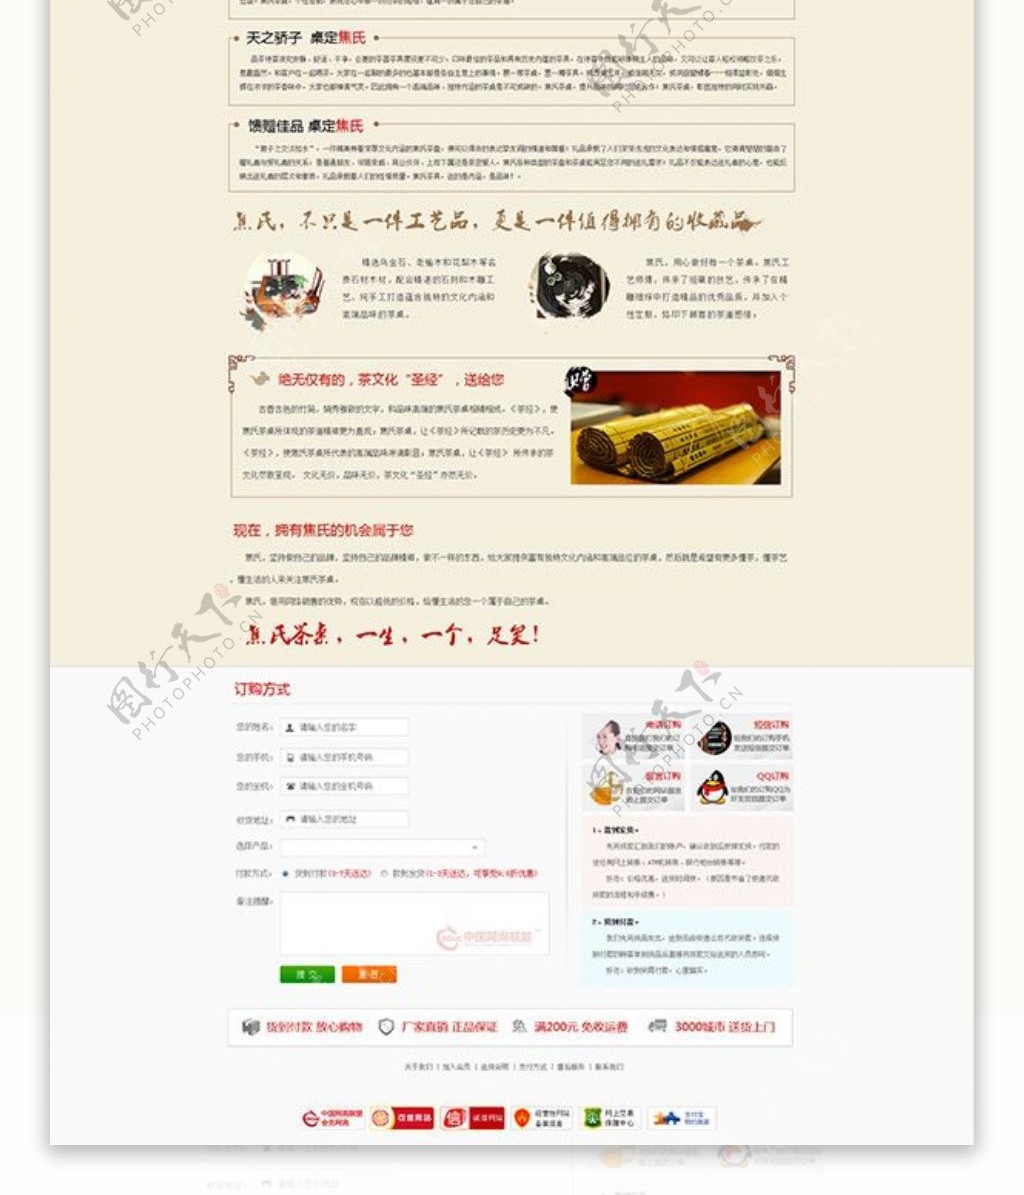 中国风茶具网页模板psd分层素材